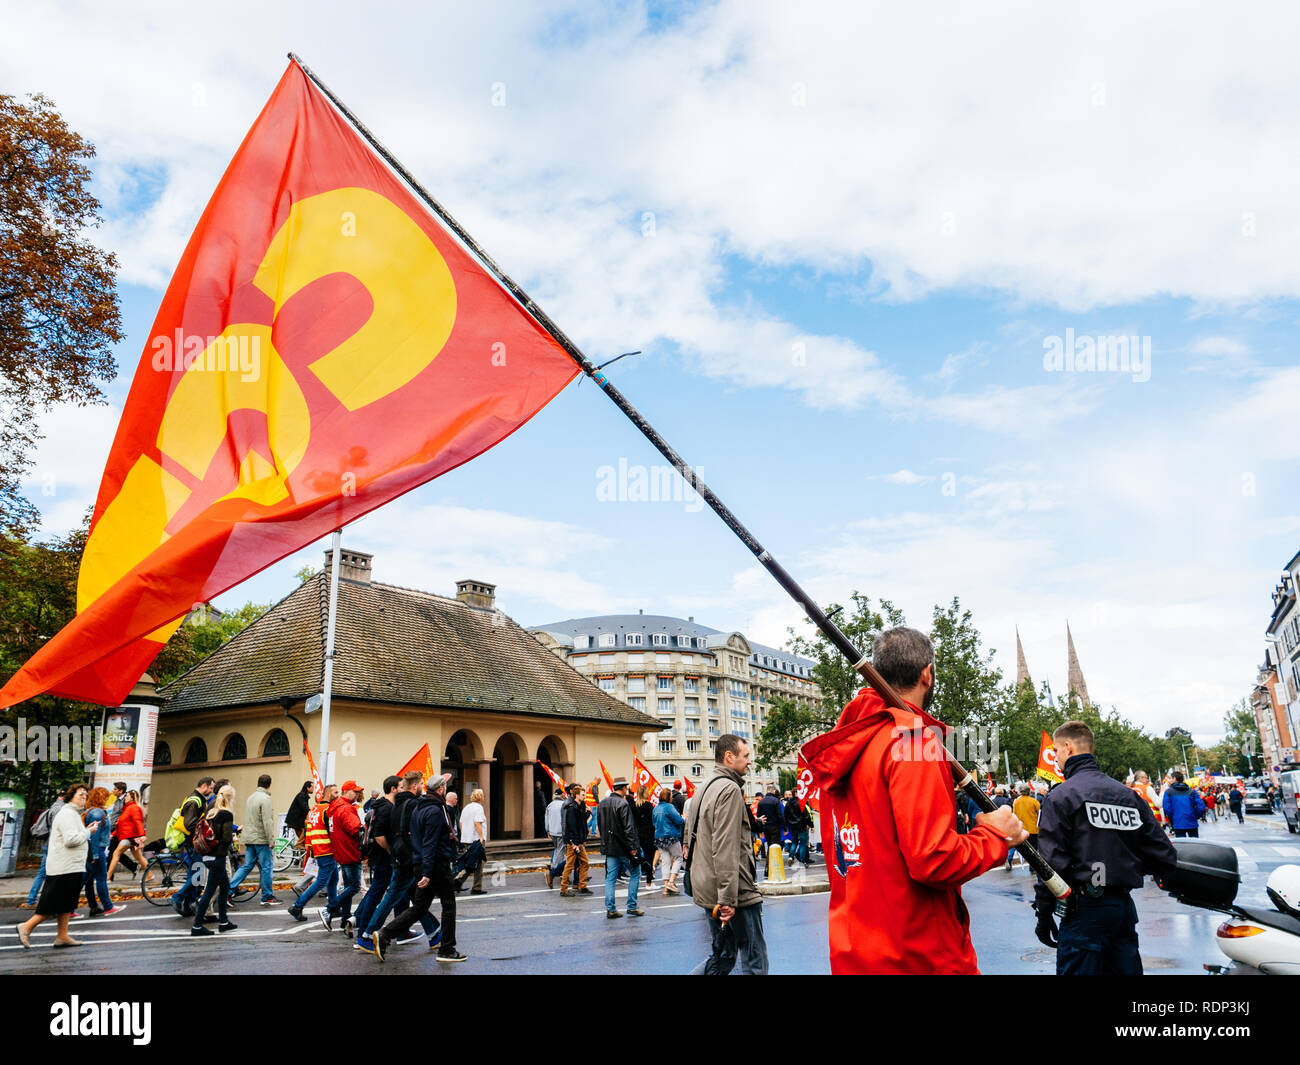 STRASBOURG, FRANCE - Sep 12, 2018 : rue centrale avec l'homme en agitant le drapeau de la CGT sur l'ensemble du territoire français de la rue au cours d'une journée de protestation contre la réforme du travail proposé par Emmanuel Macron Gouvernement avec agent de police surveiller la manifestation Banque D'Images